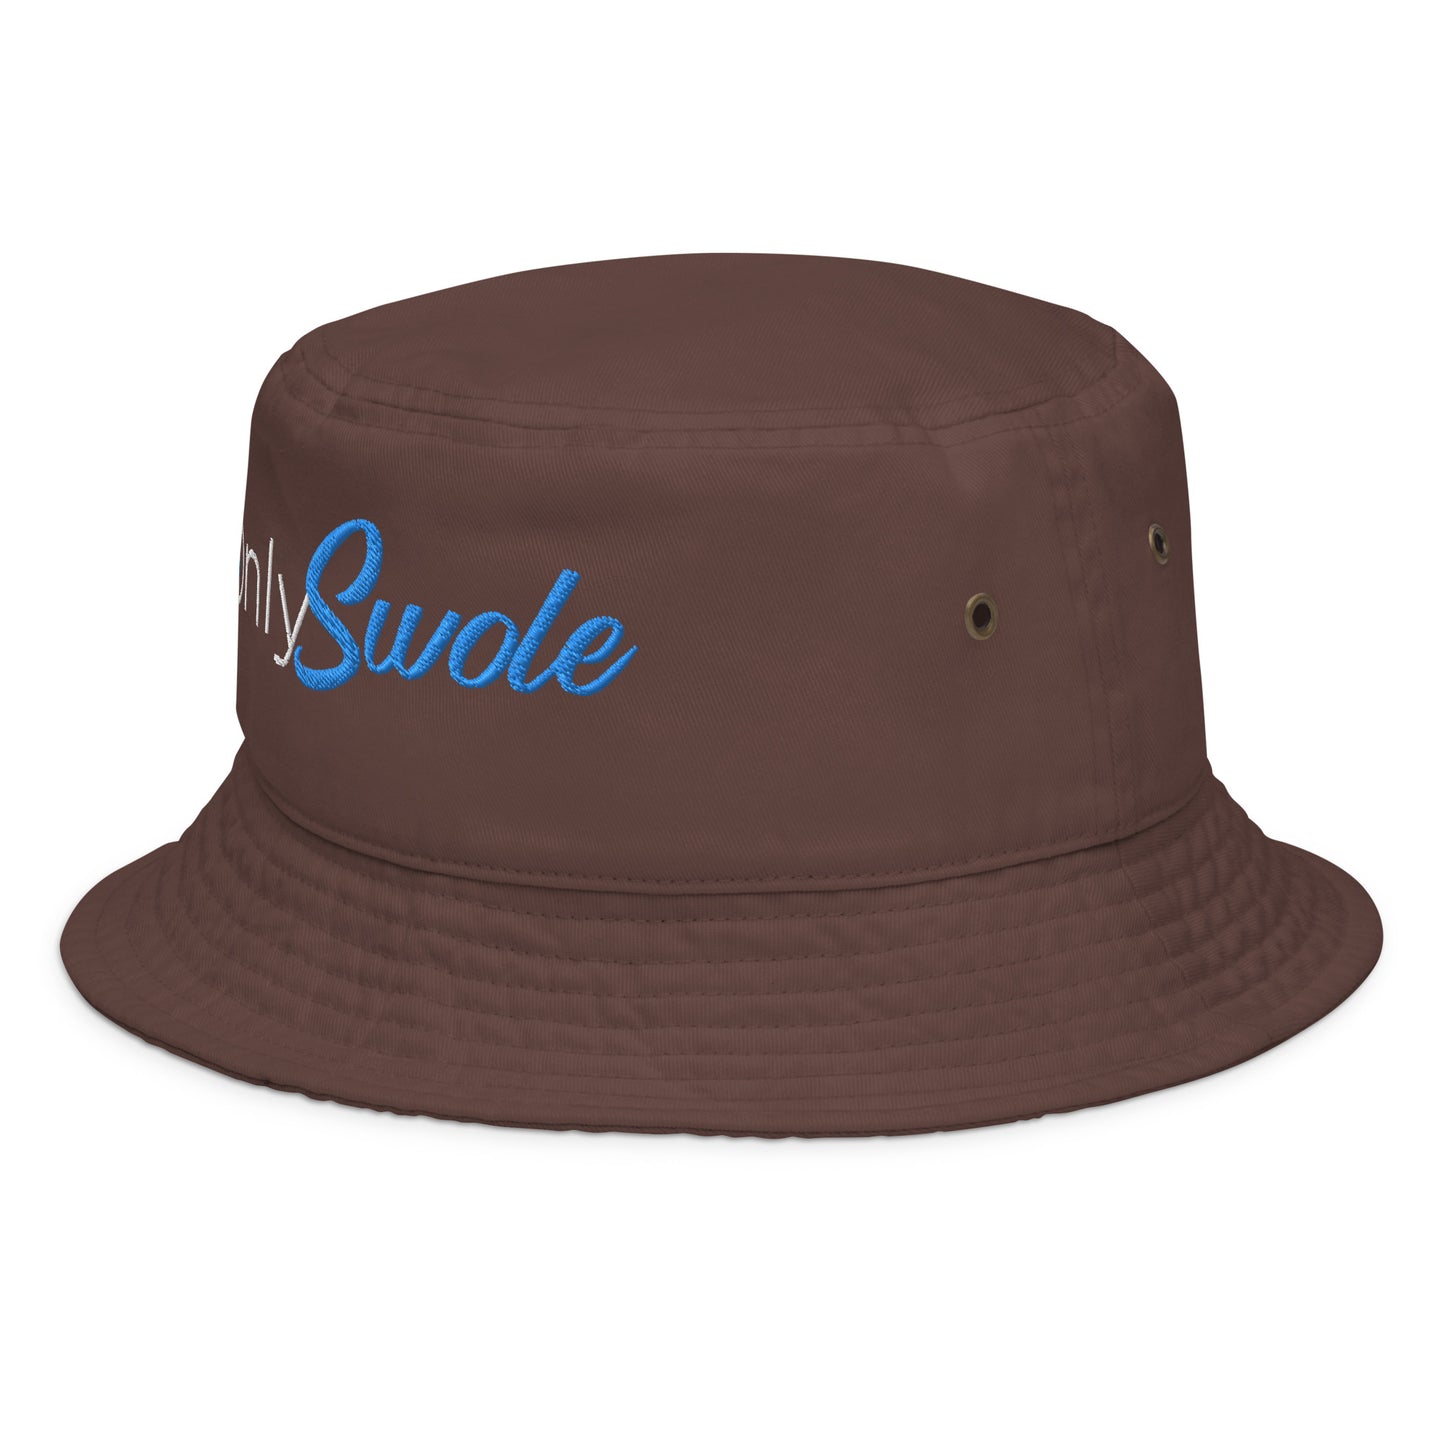 Only Swole Bucket Hat